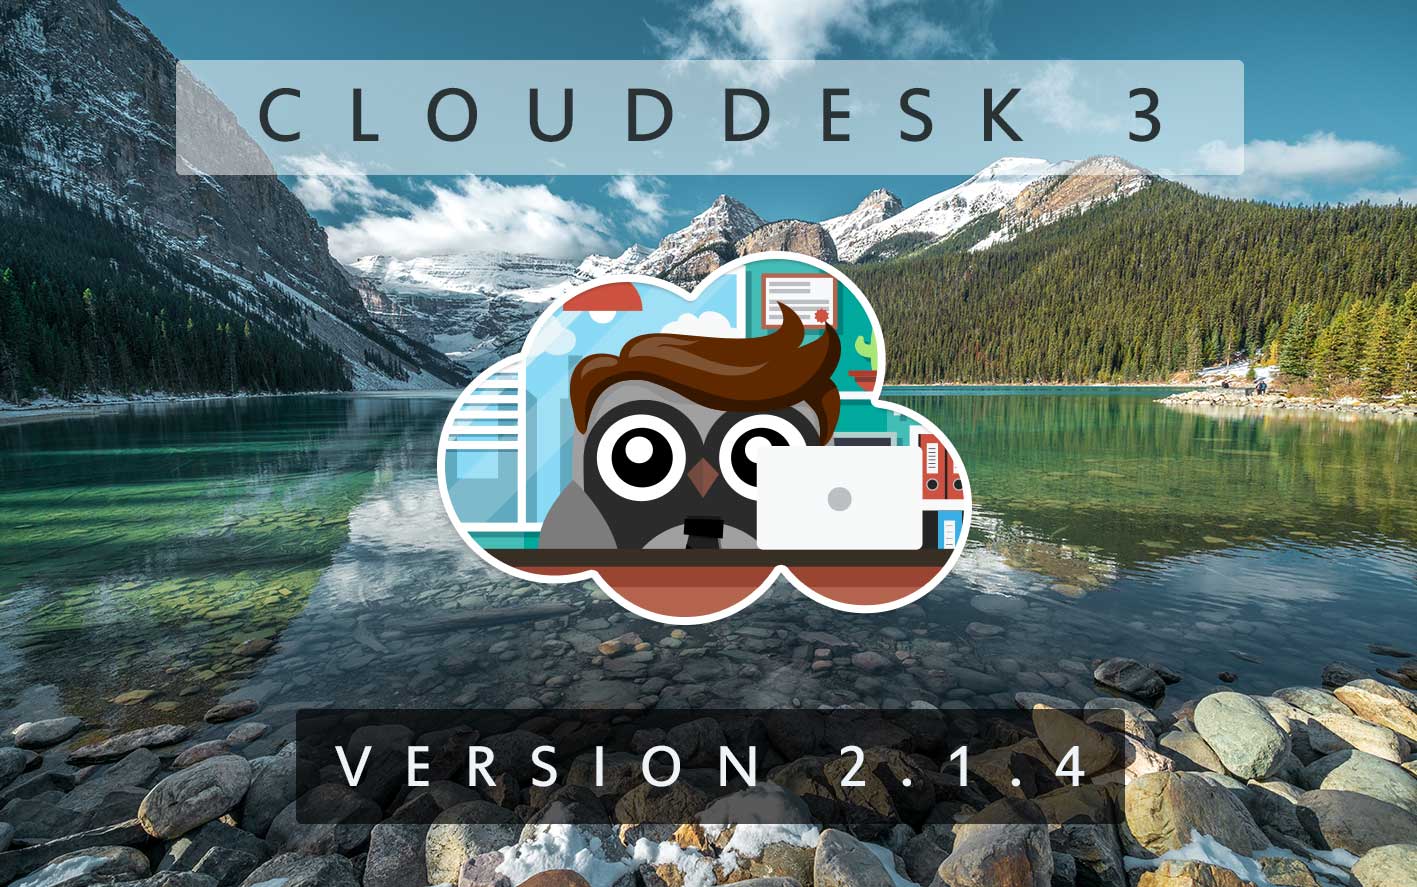 Cloud Desk 3 - Version 2.1.4